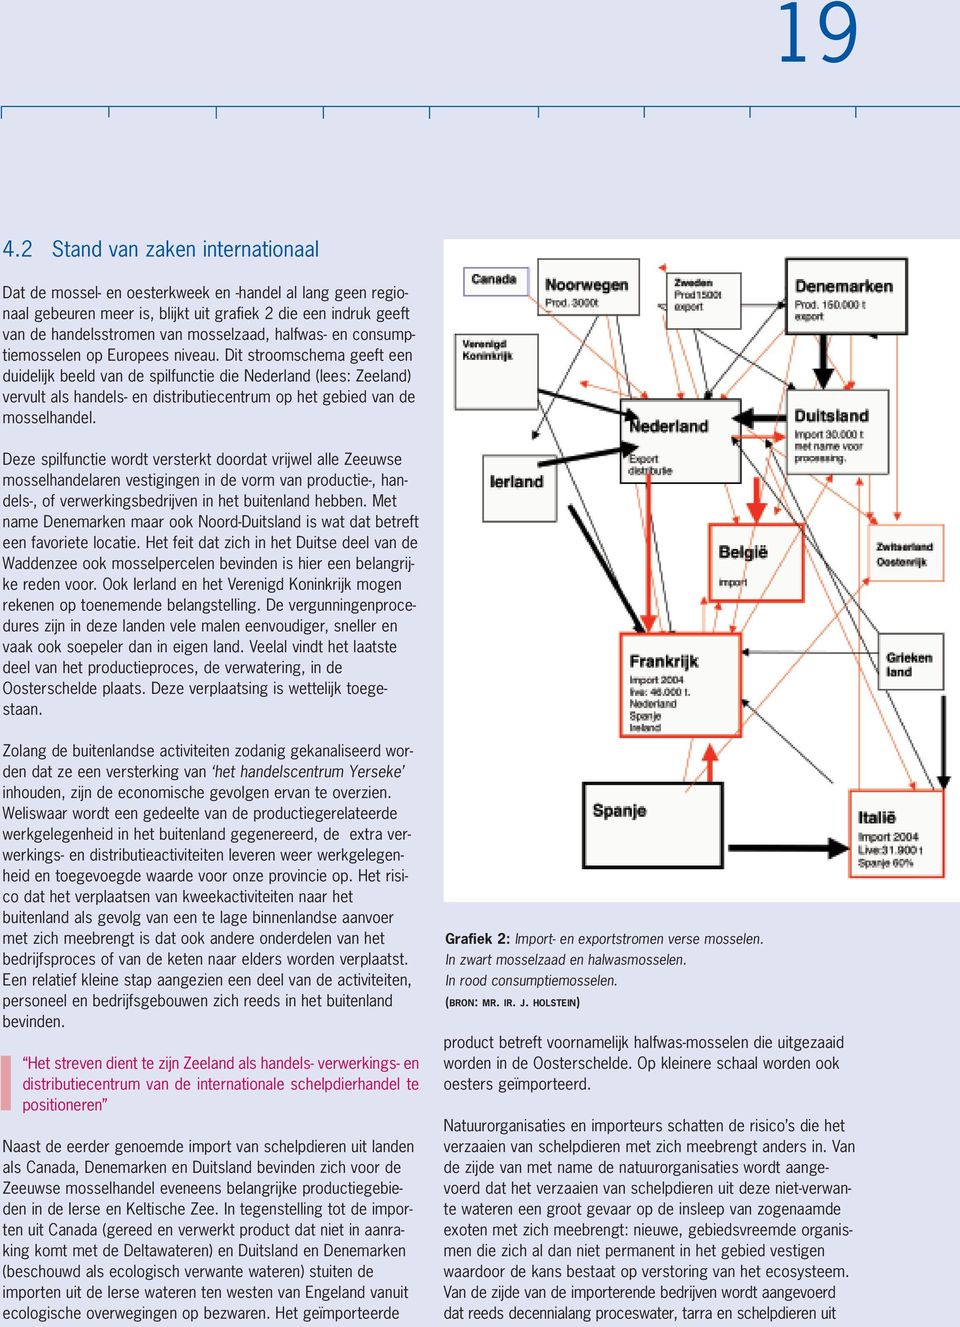 Dit stroomschema geeft een duidelijk beeld van de spilfunctie die Nederland (lees: Zeeland) vervult als handels- en distributiecentrum op het gebied van de mosselhandel.